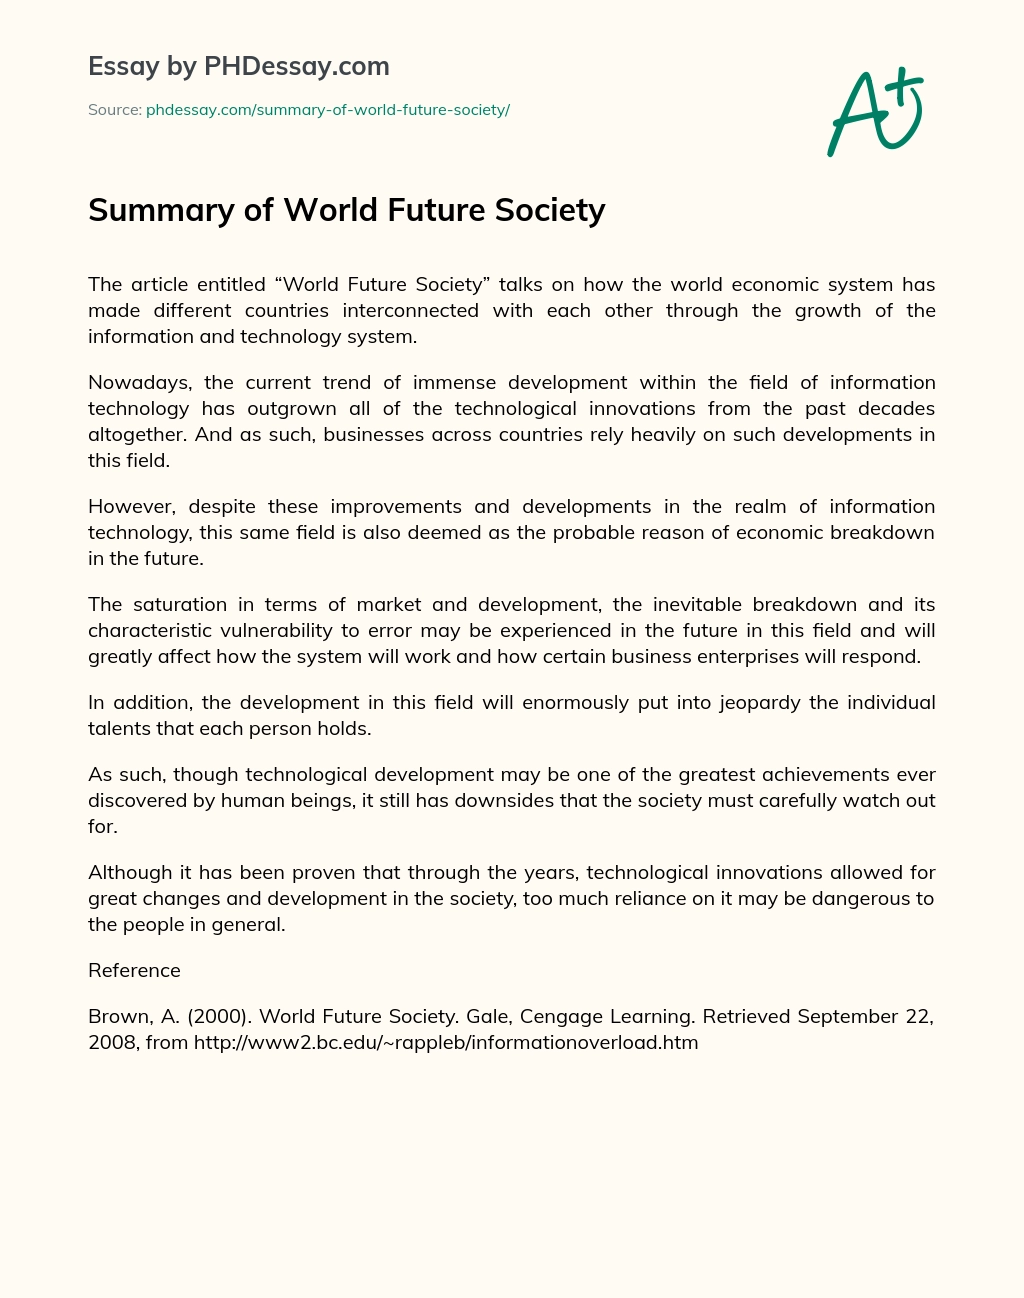 Summary of World Future Society essay